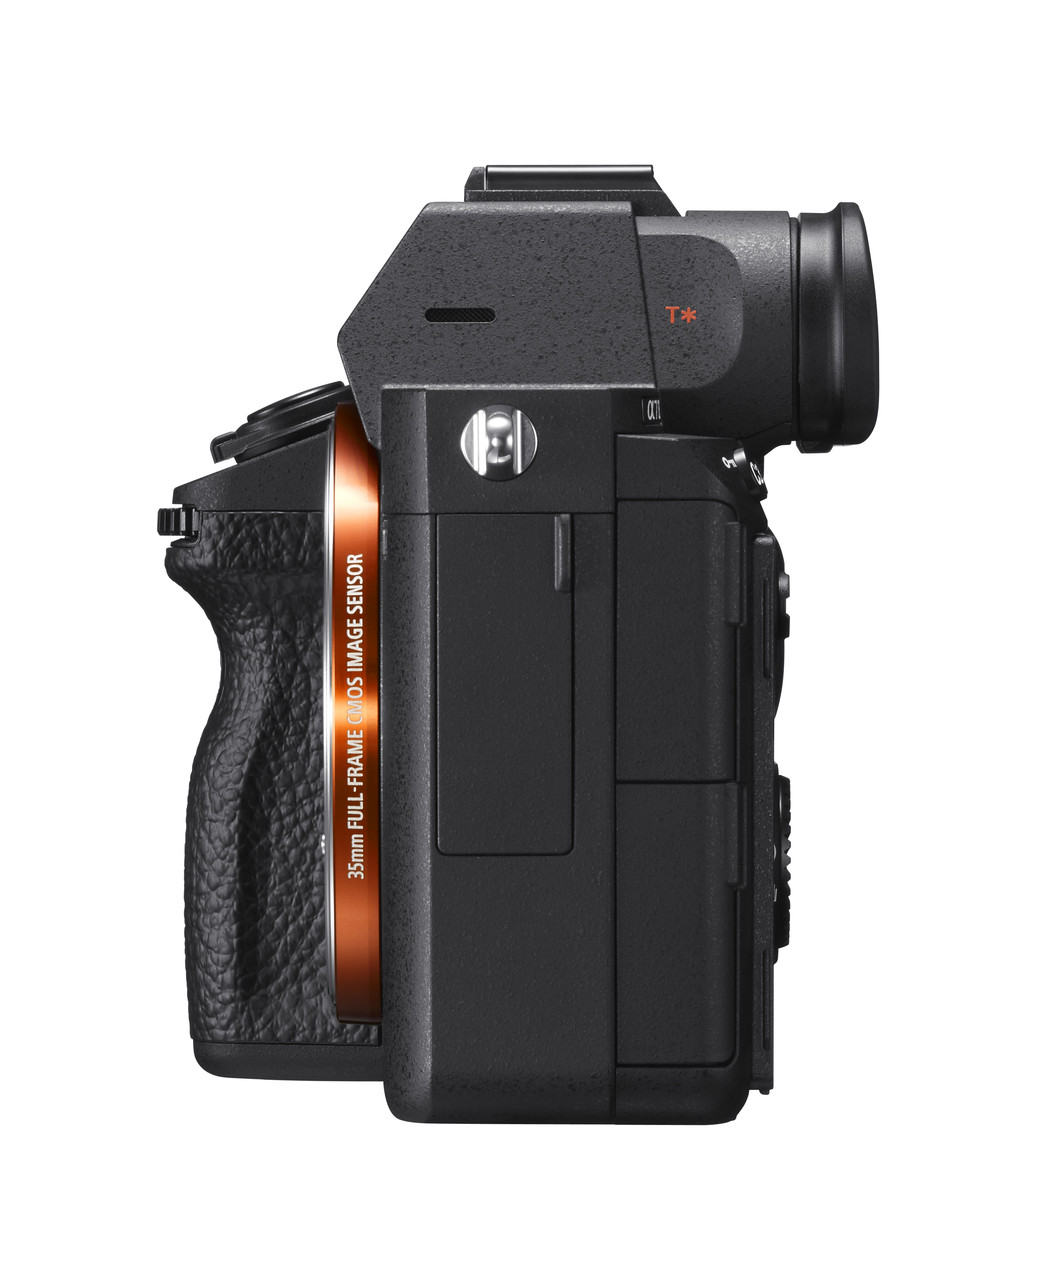 Sony ILCE-7M3 a7 III with FE 24-105mm f/4 G OSS Lens - ASK Outlets Ltd